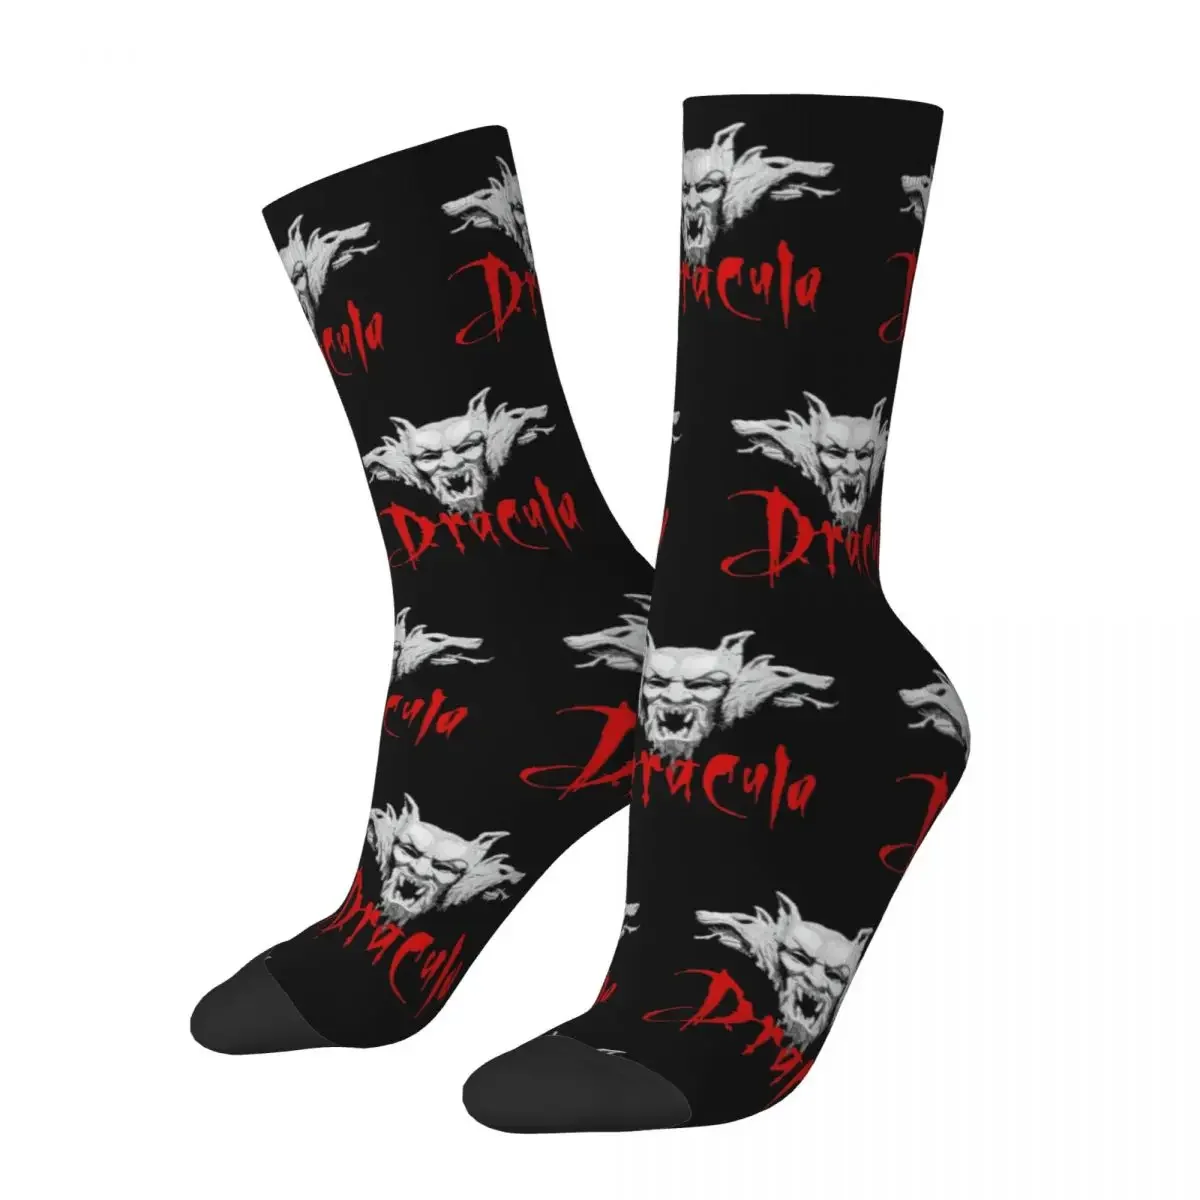 

Дракула брам Стокер носки модные носки Харадзюку летние носки средней длины подарок новинка уличный стиль сумасшедшие носки для мужчин женщин